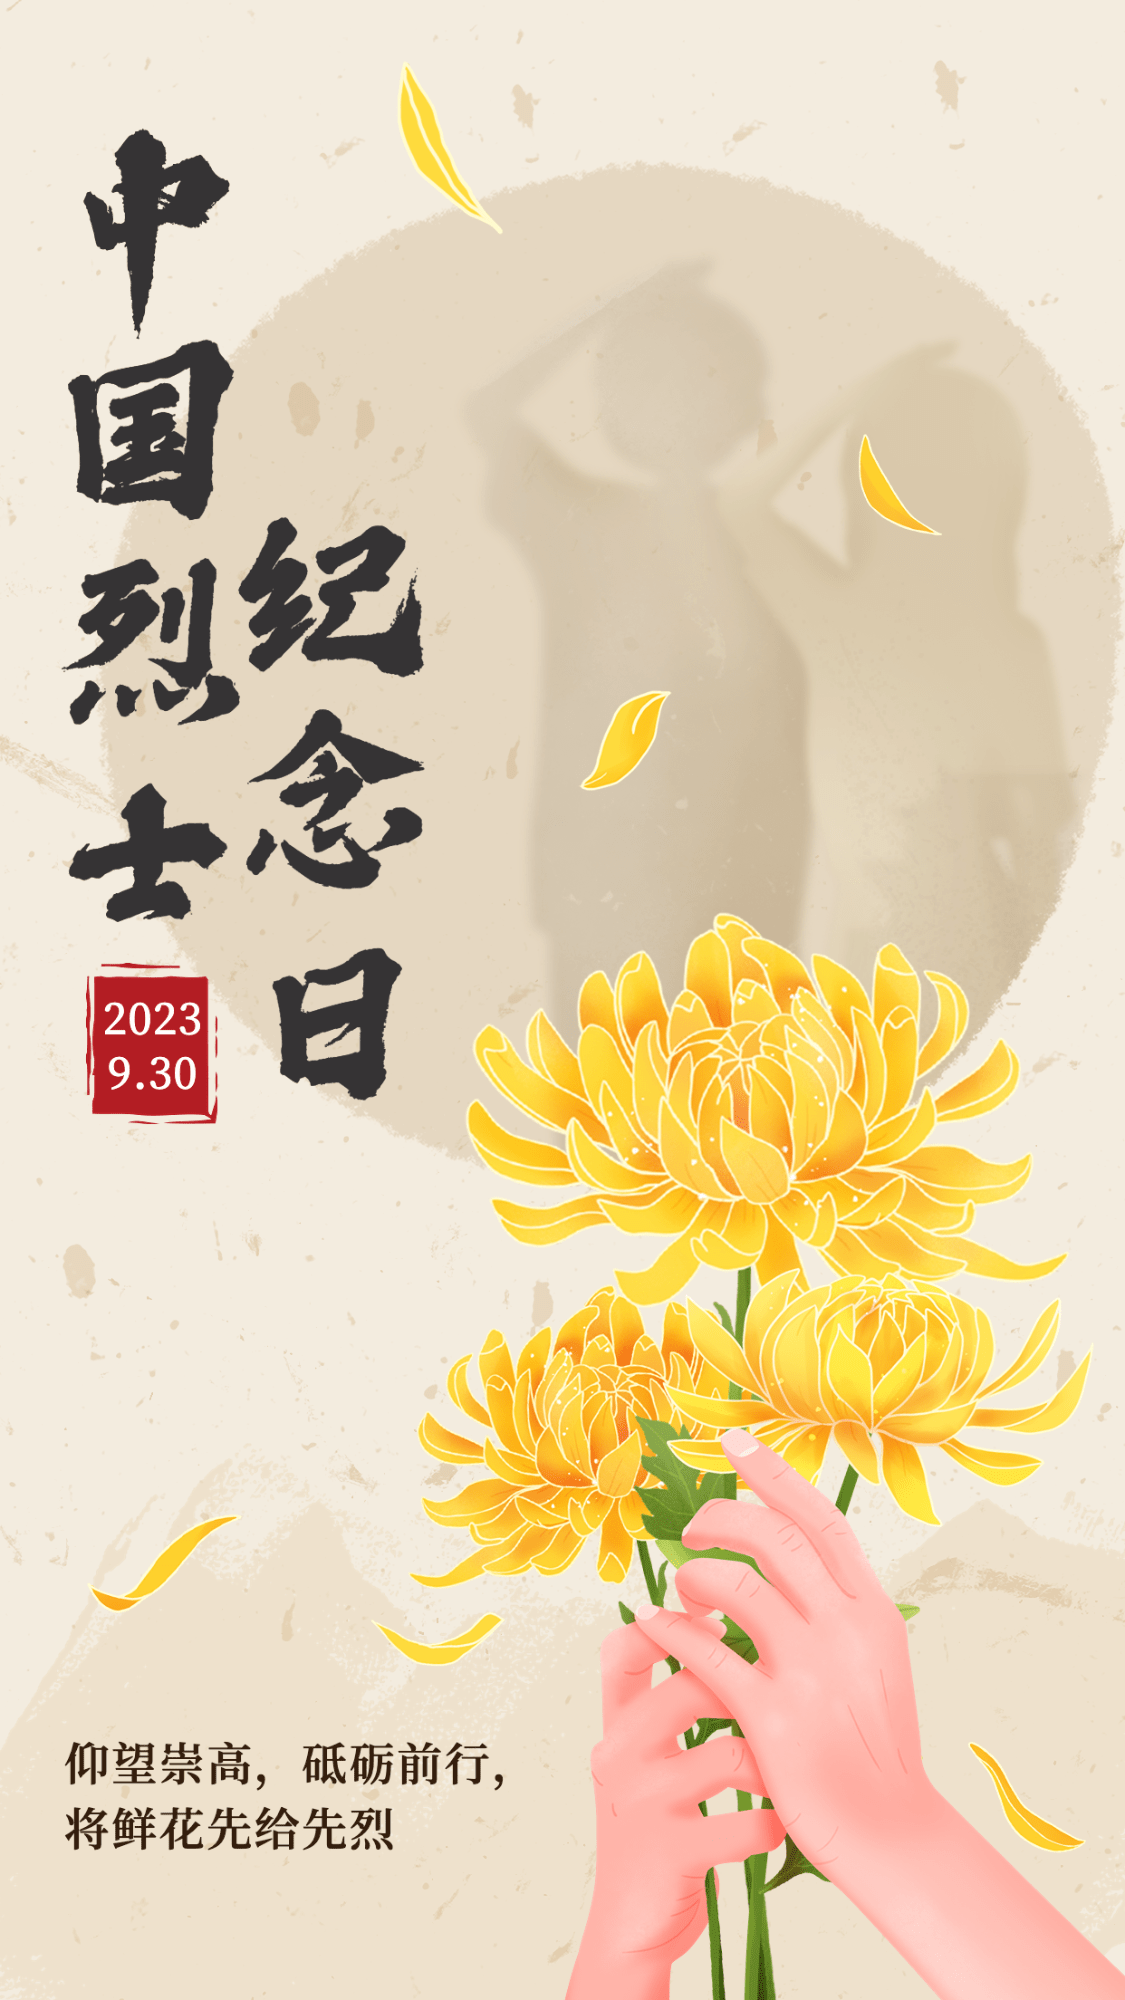 中国烈士纪念日节日宣传中国风插画手机海报